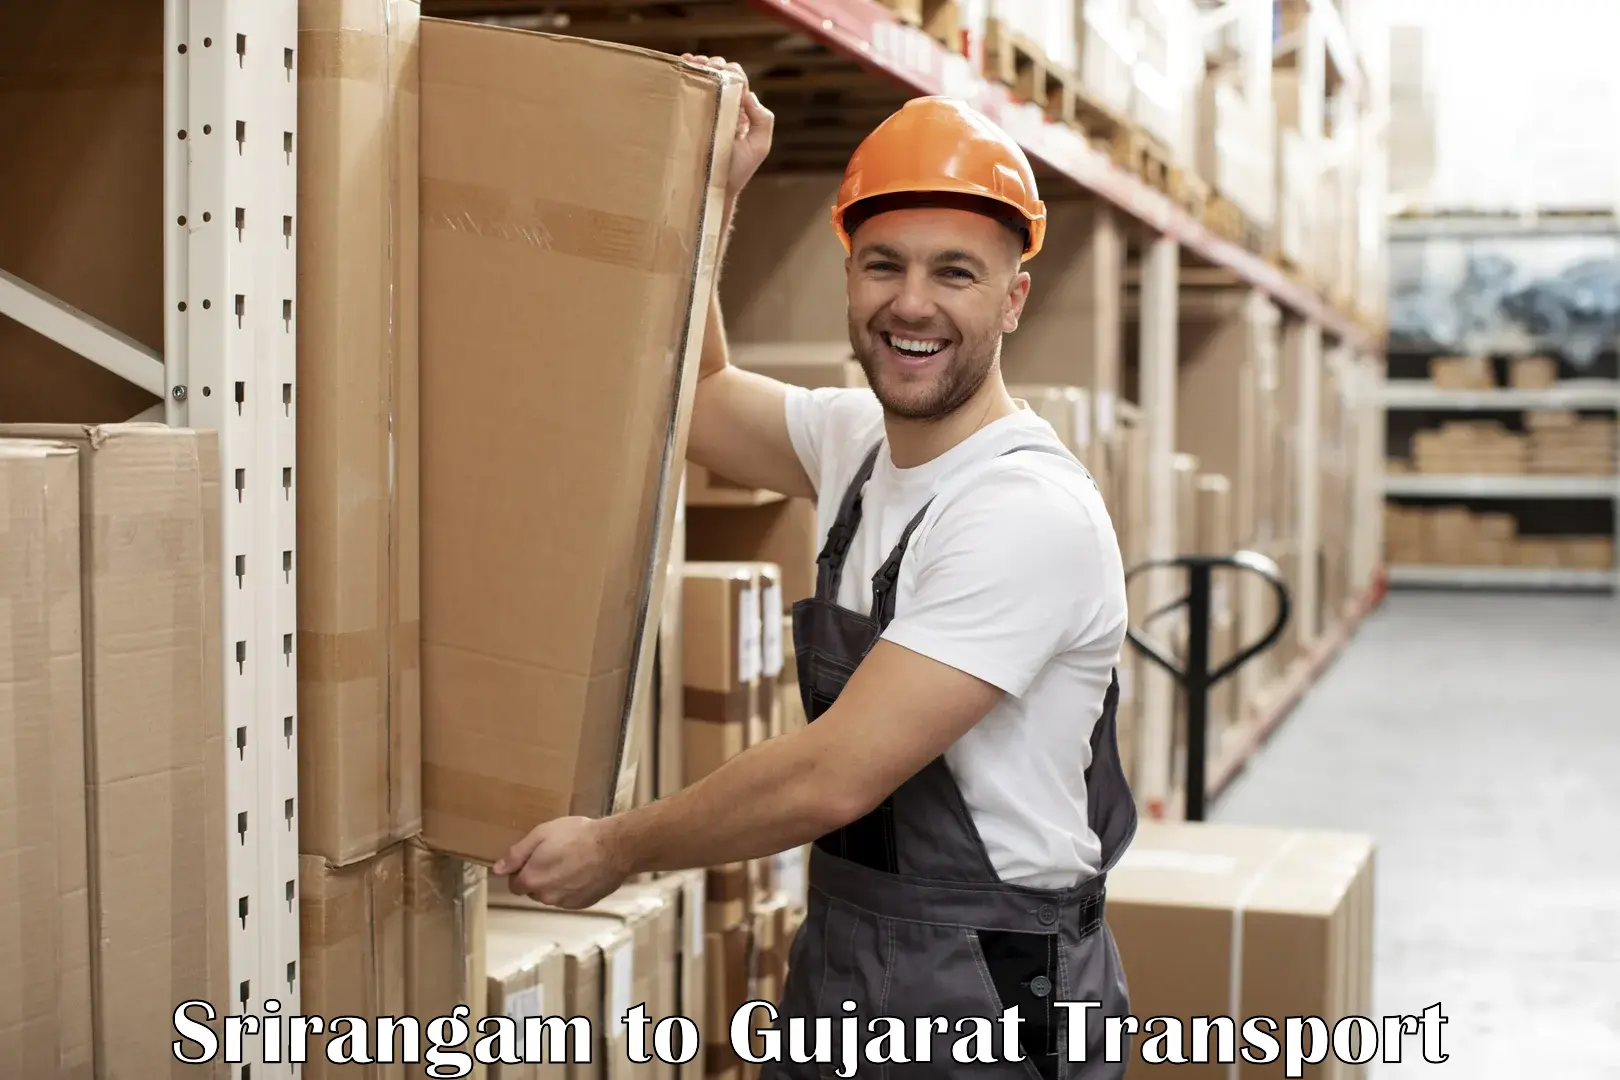 Shipping partner Srirangam to Gujarat